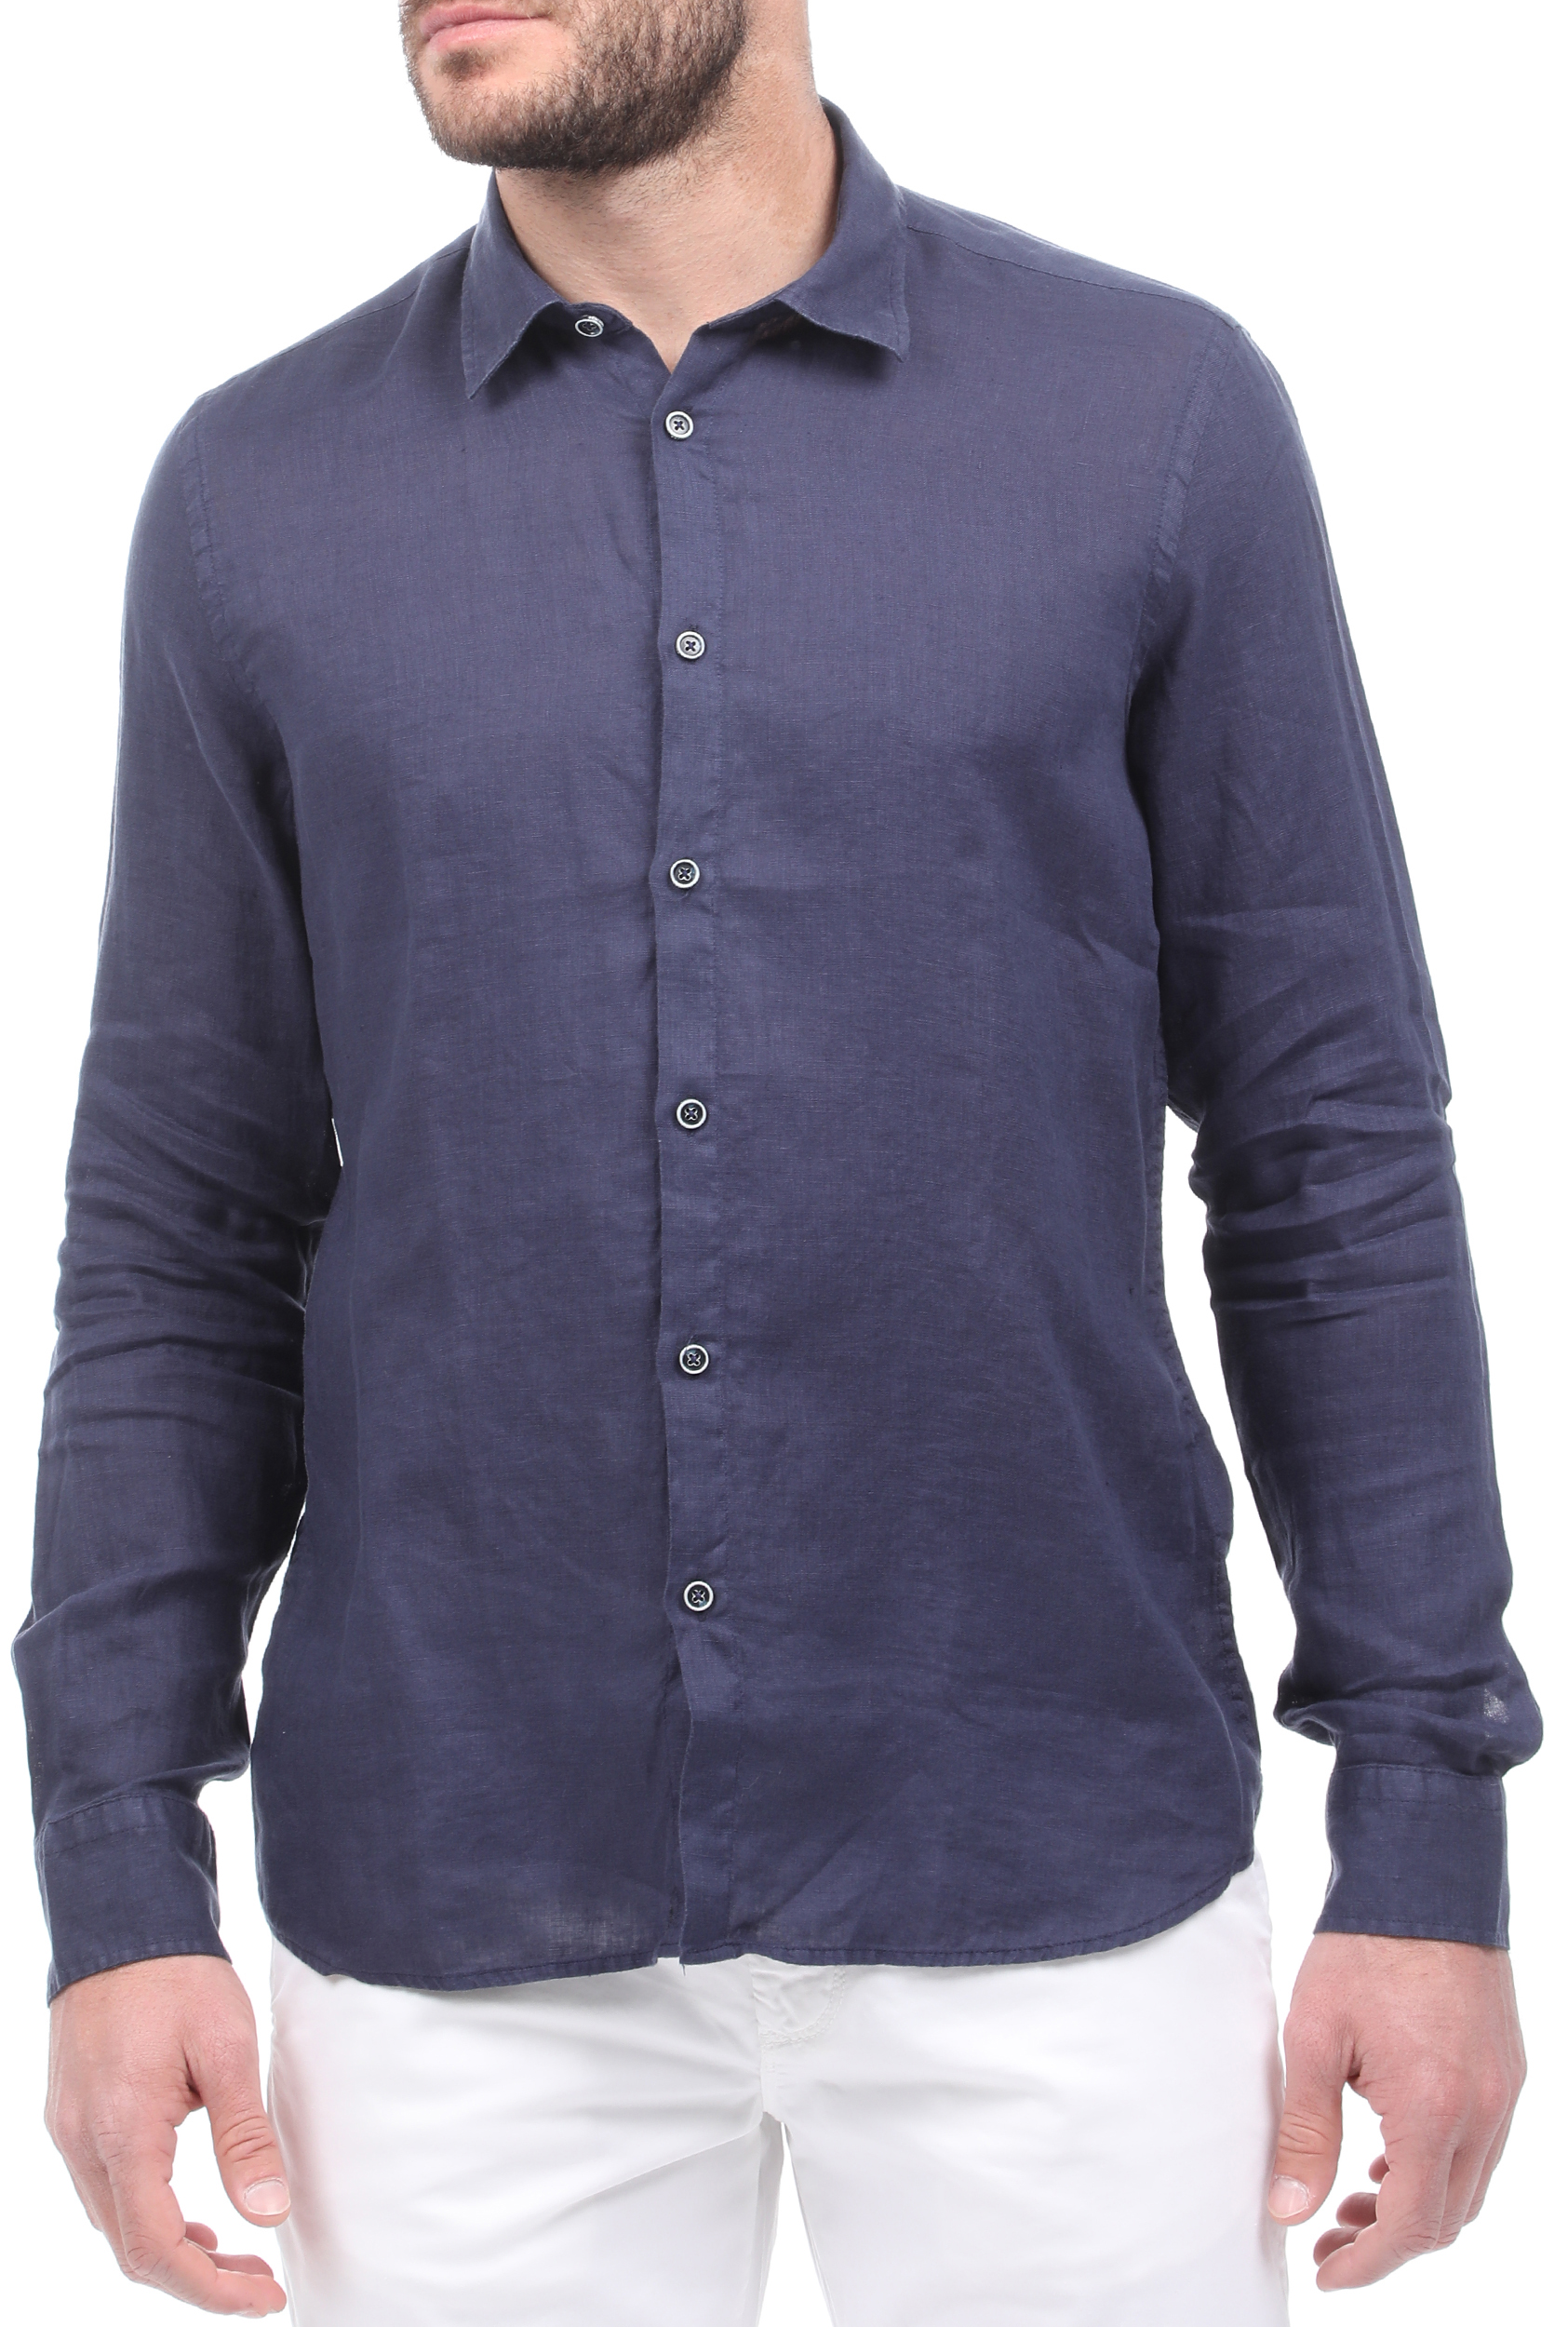 Ανδρικά/Ρούχα/Πουκάμισα/Μακρυμάνικα SSEINSE - Ανδρικό λινό πουκάμισο SSEINSE μπλε